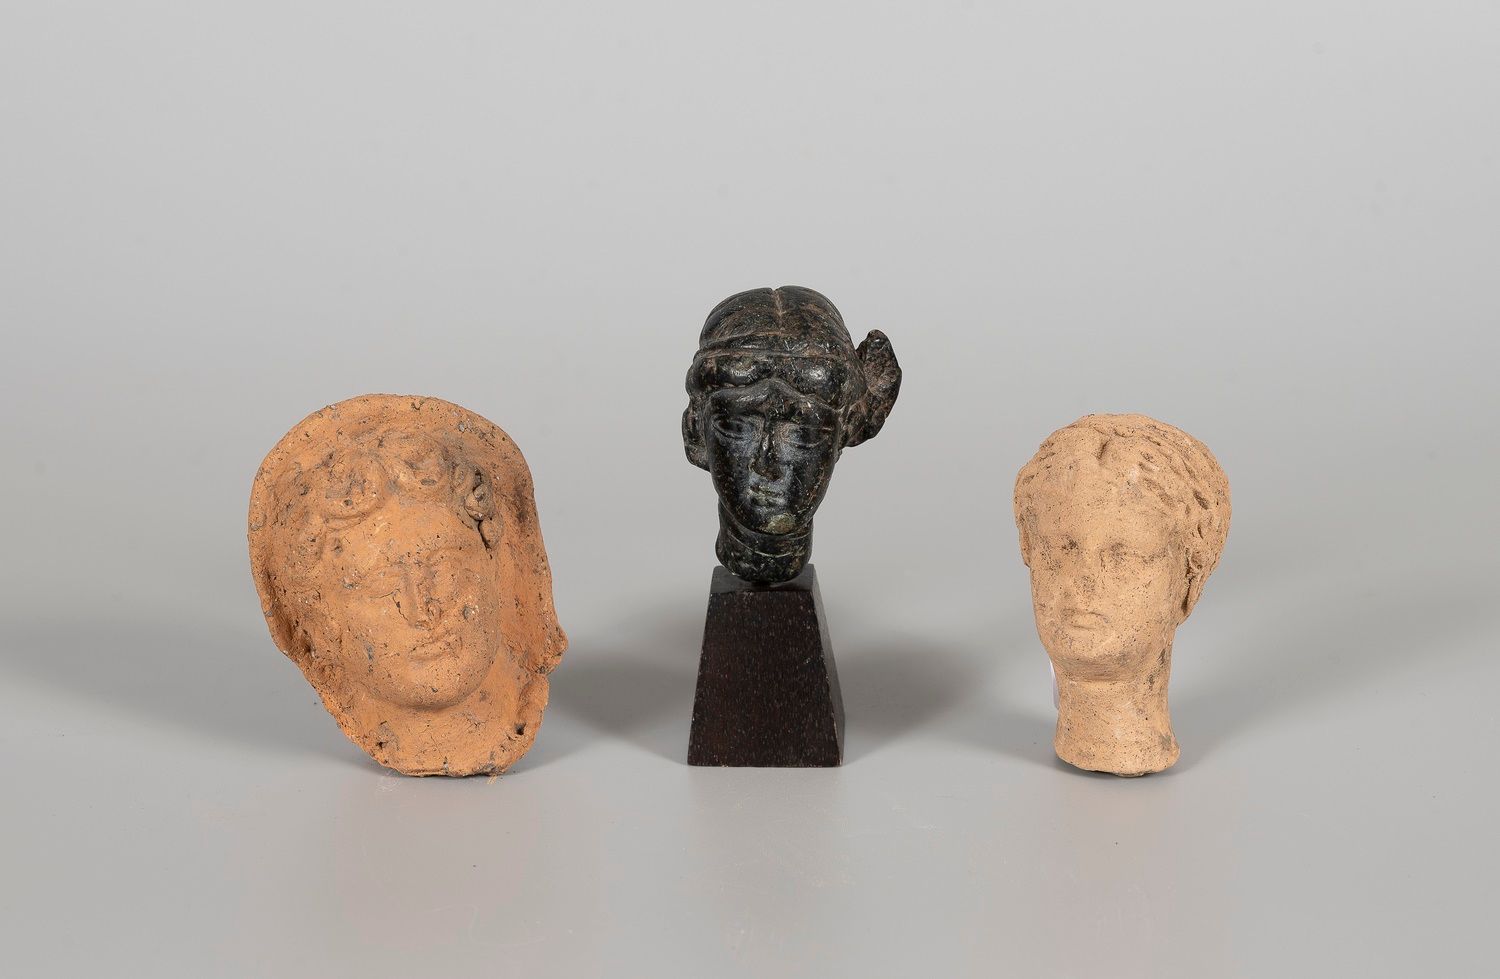 Null 老年病学

复式地段。

带着丝带的女人头像。石头

- 脸。一件投票雕像的碎片。陶器

- 头部，陶器。

罗马时期，公元2-3世纪